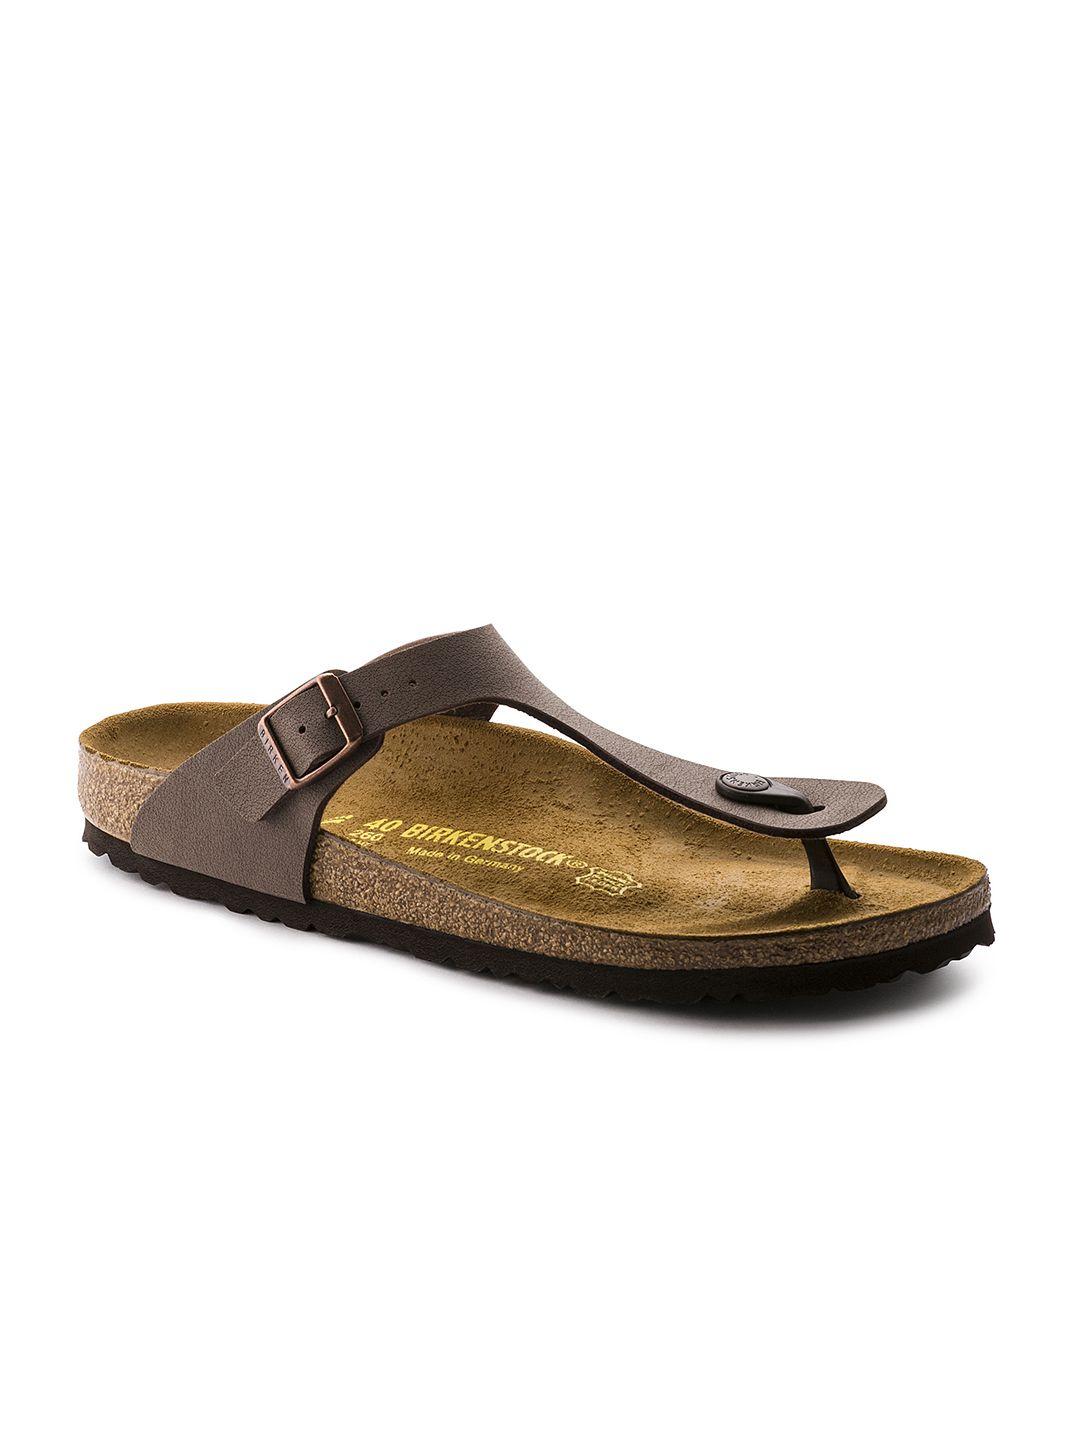 birkenstock unisex brown gizeh birko-flor regular width nubuck sandals